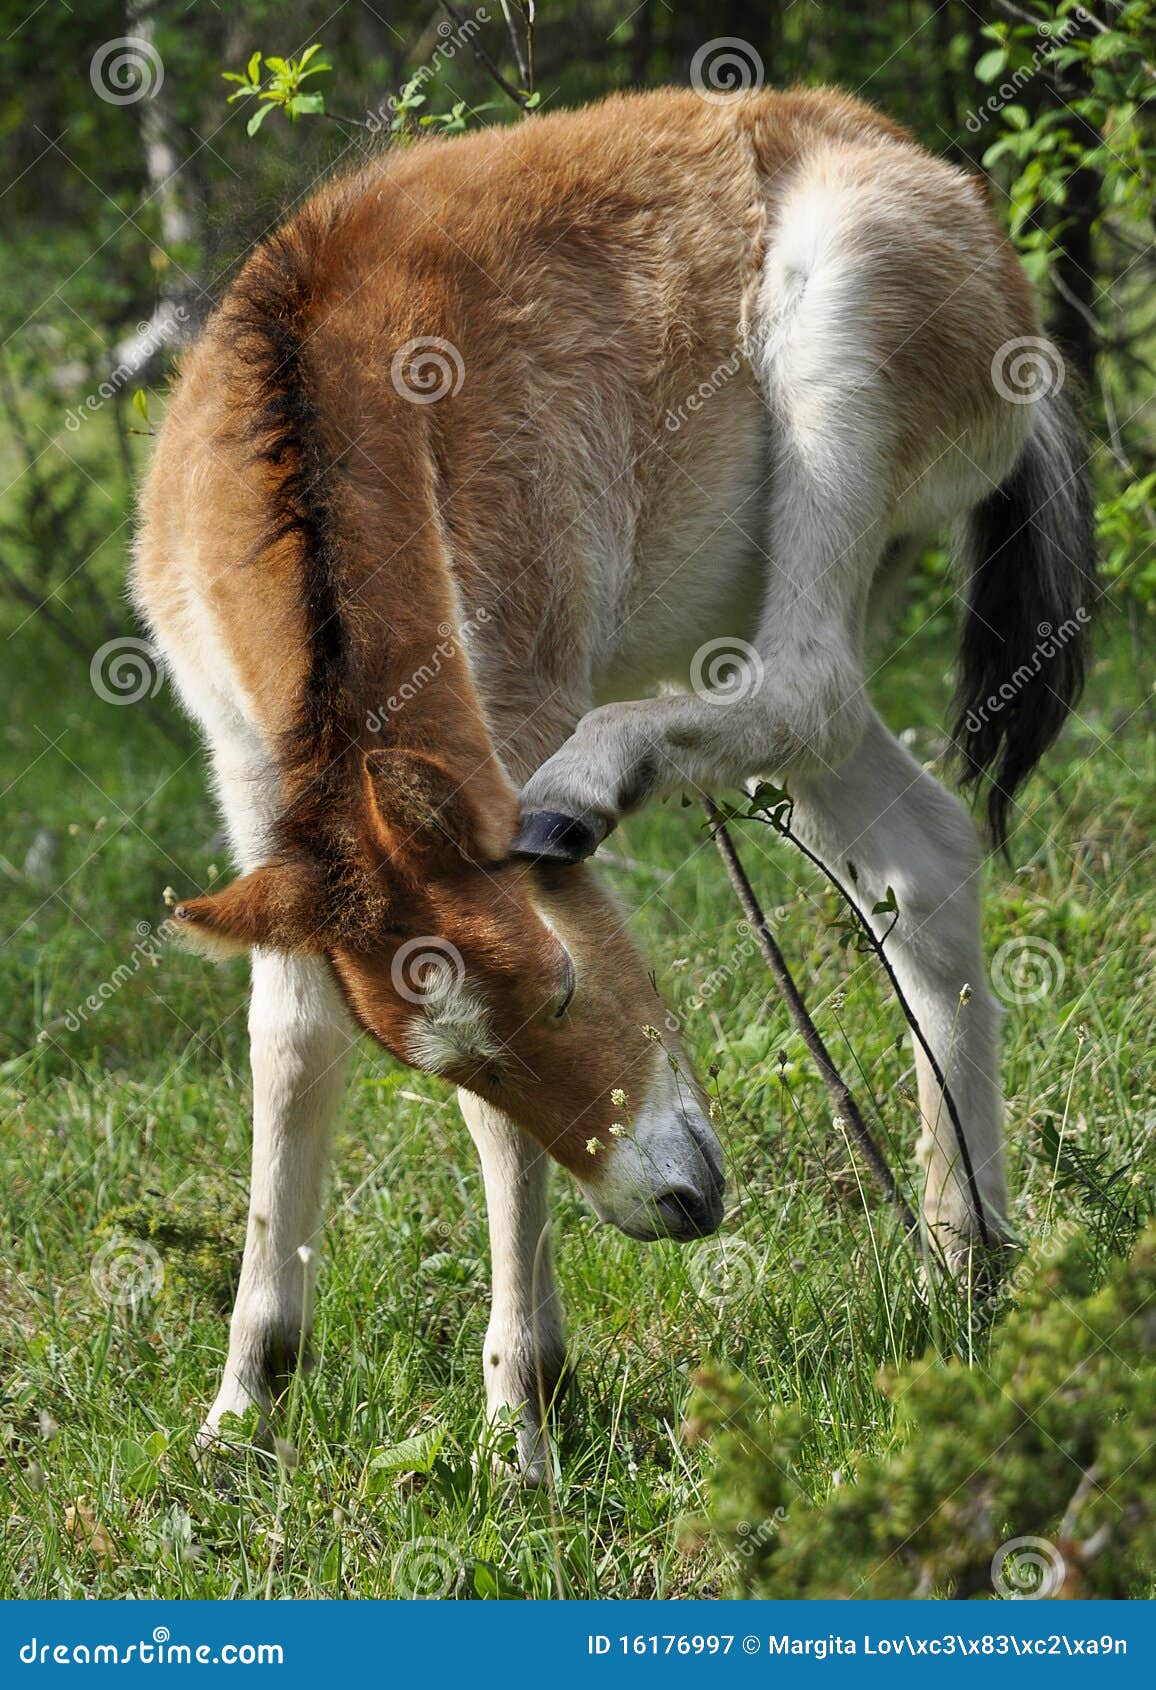 wildhorse-foal in lojsta hed, sweden